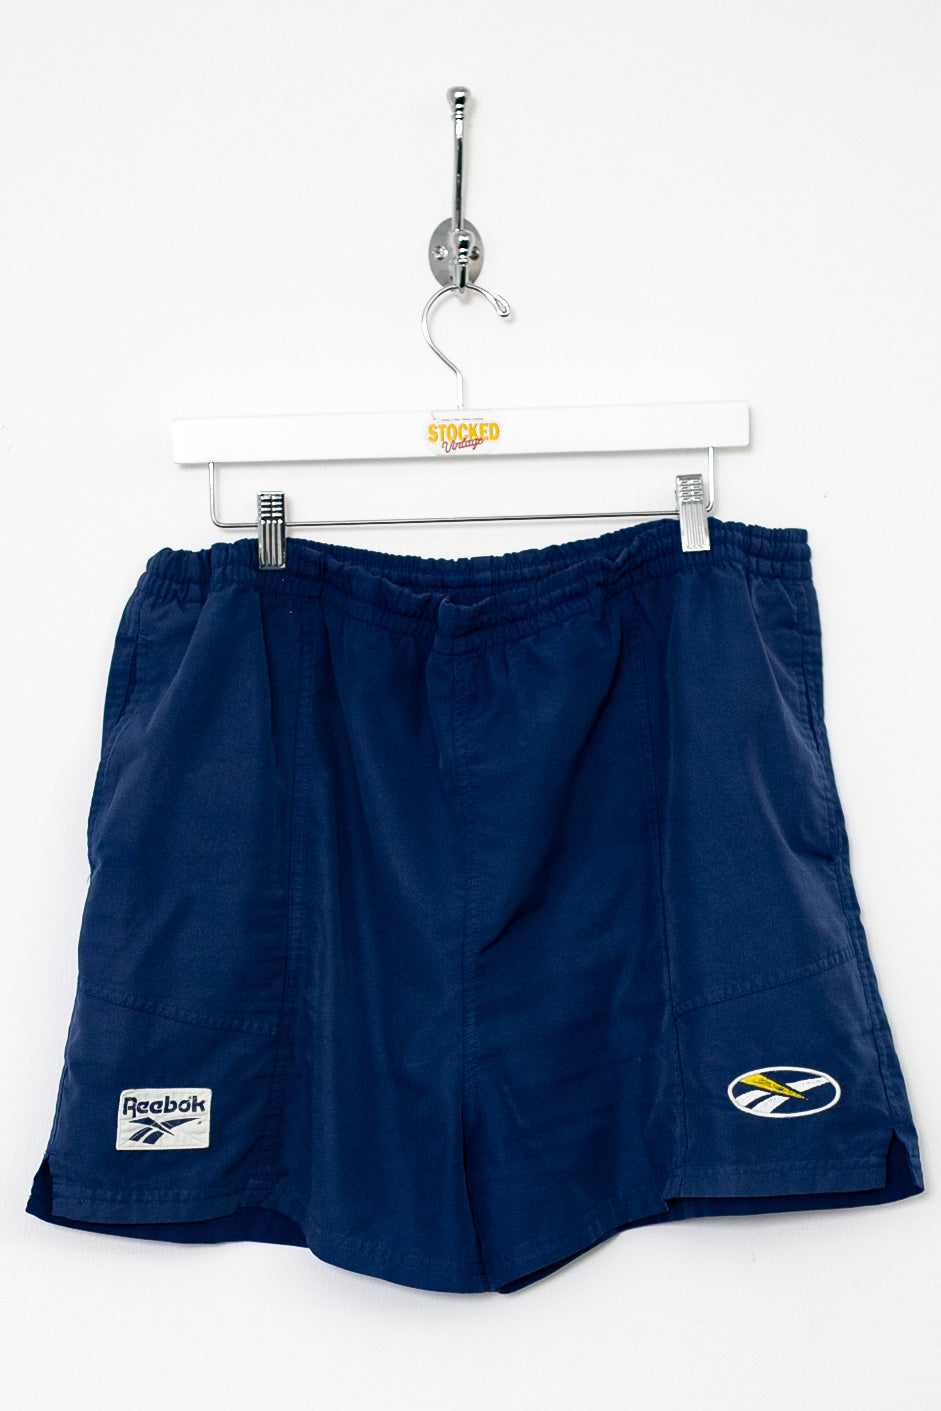 00s Reebok Shorts (XL)